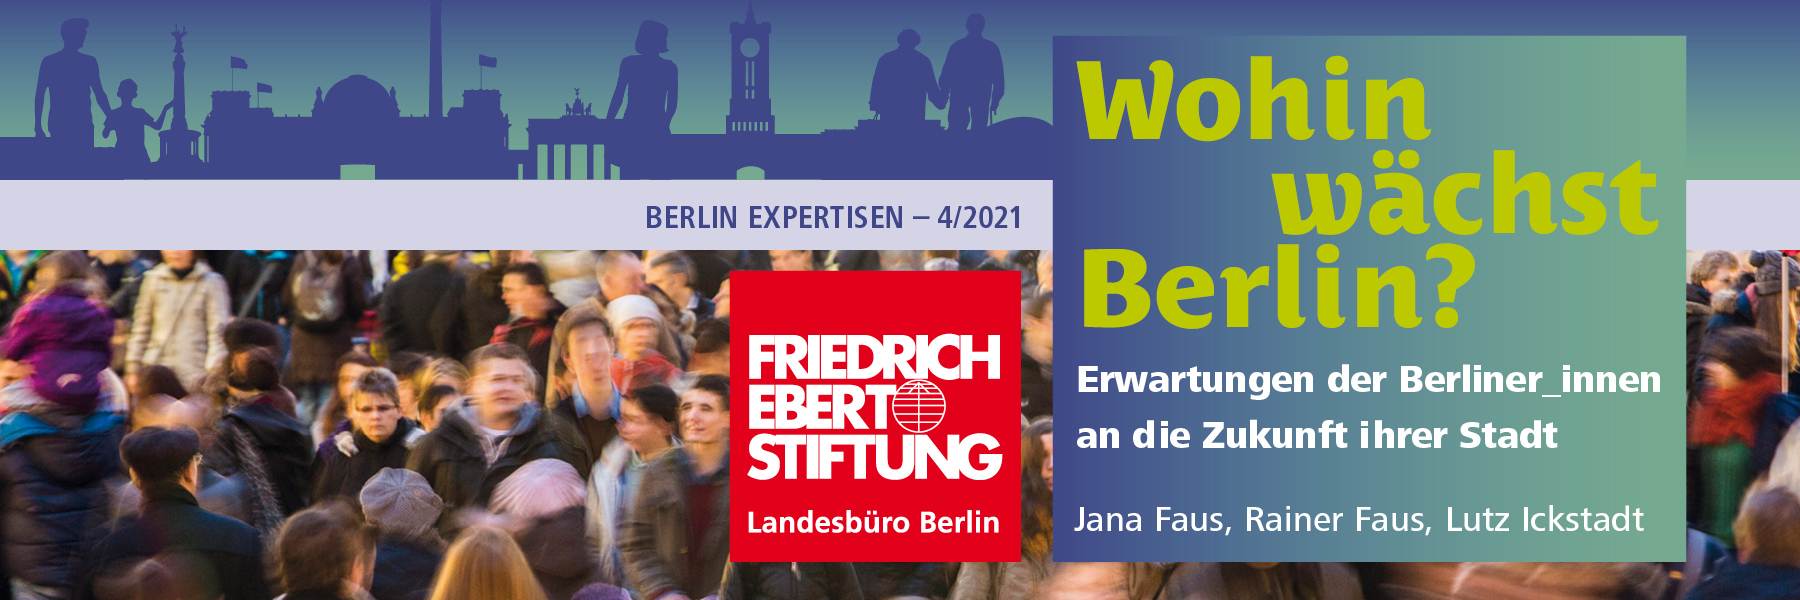 Ankündigung der Veranstaltung "Wohin wächst Berlin?" im April 2021 in Berlin.